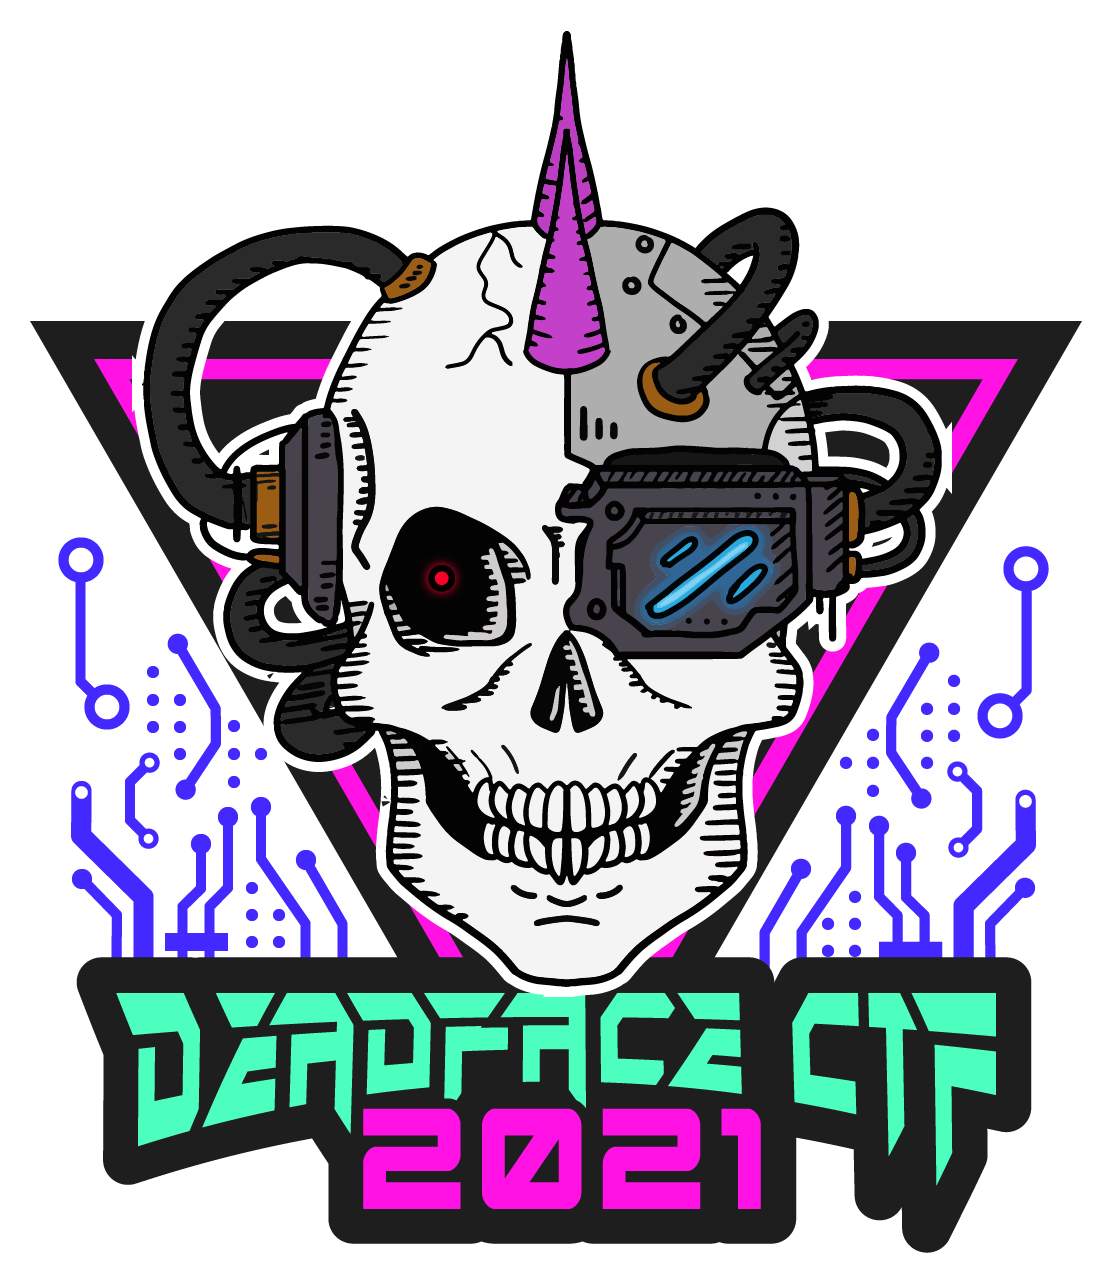 DEADFACE2021 Logo